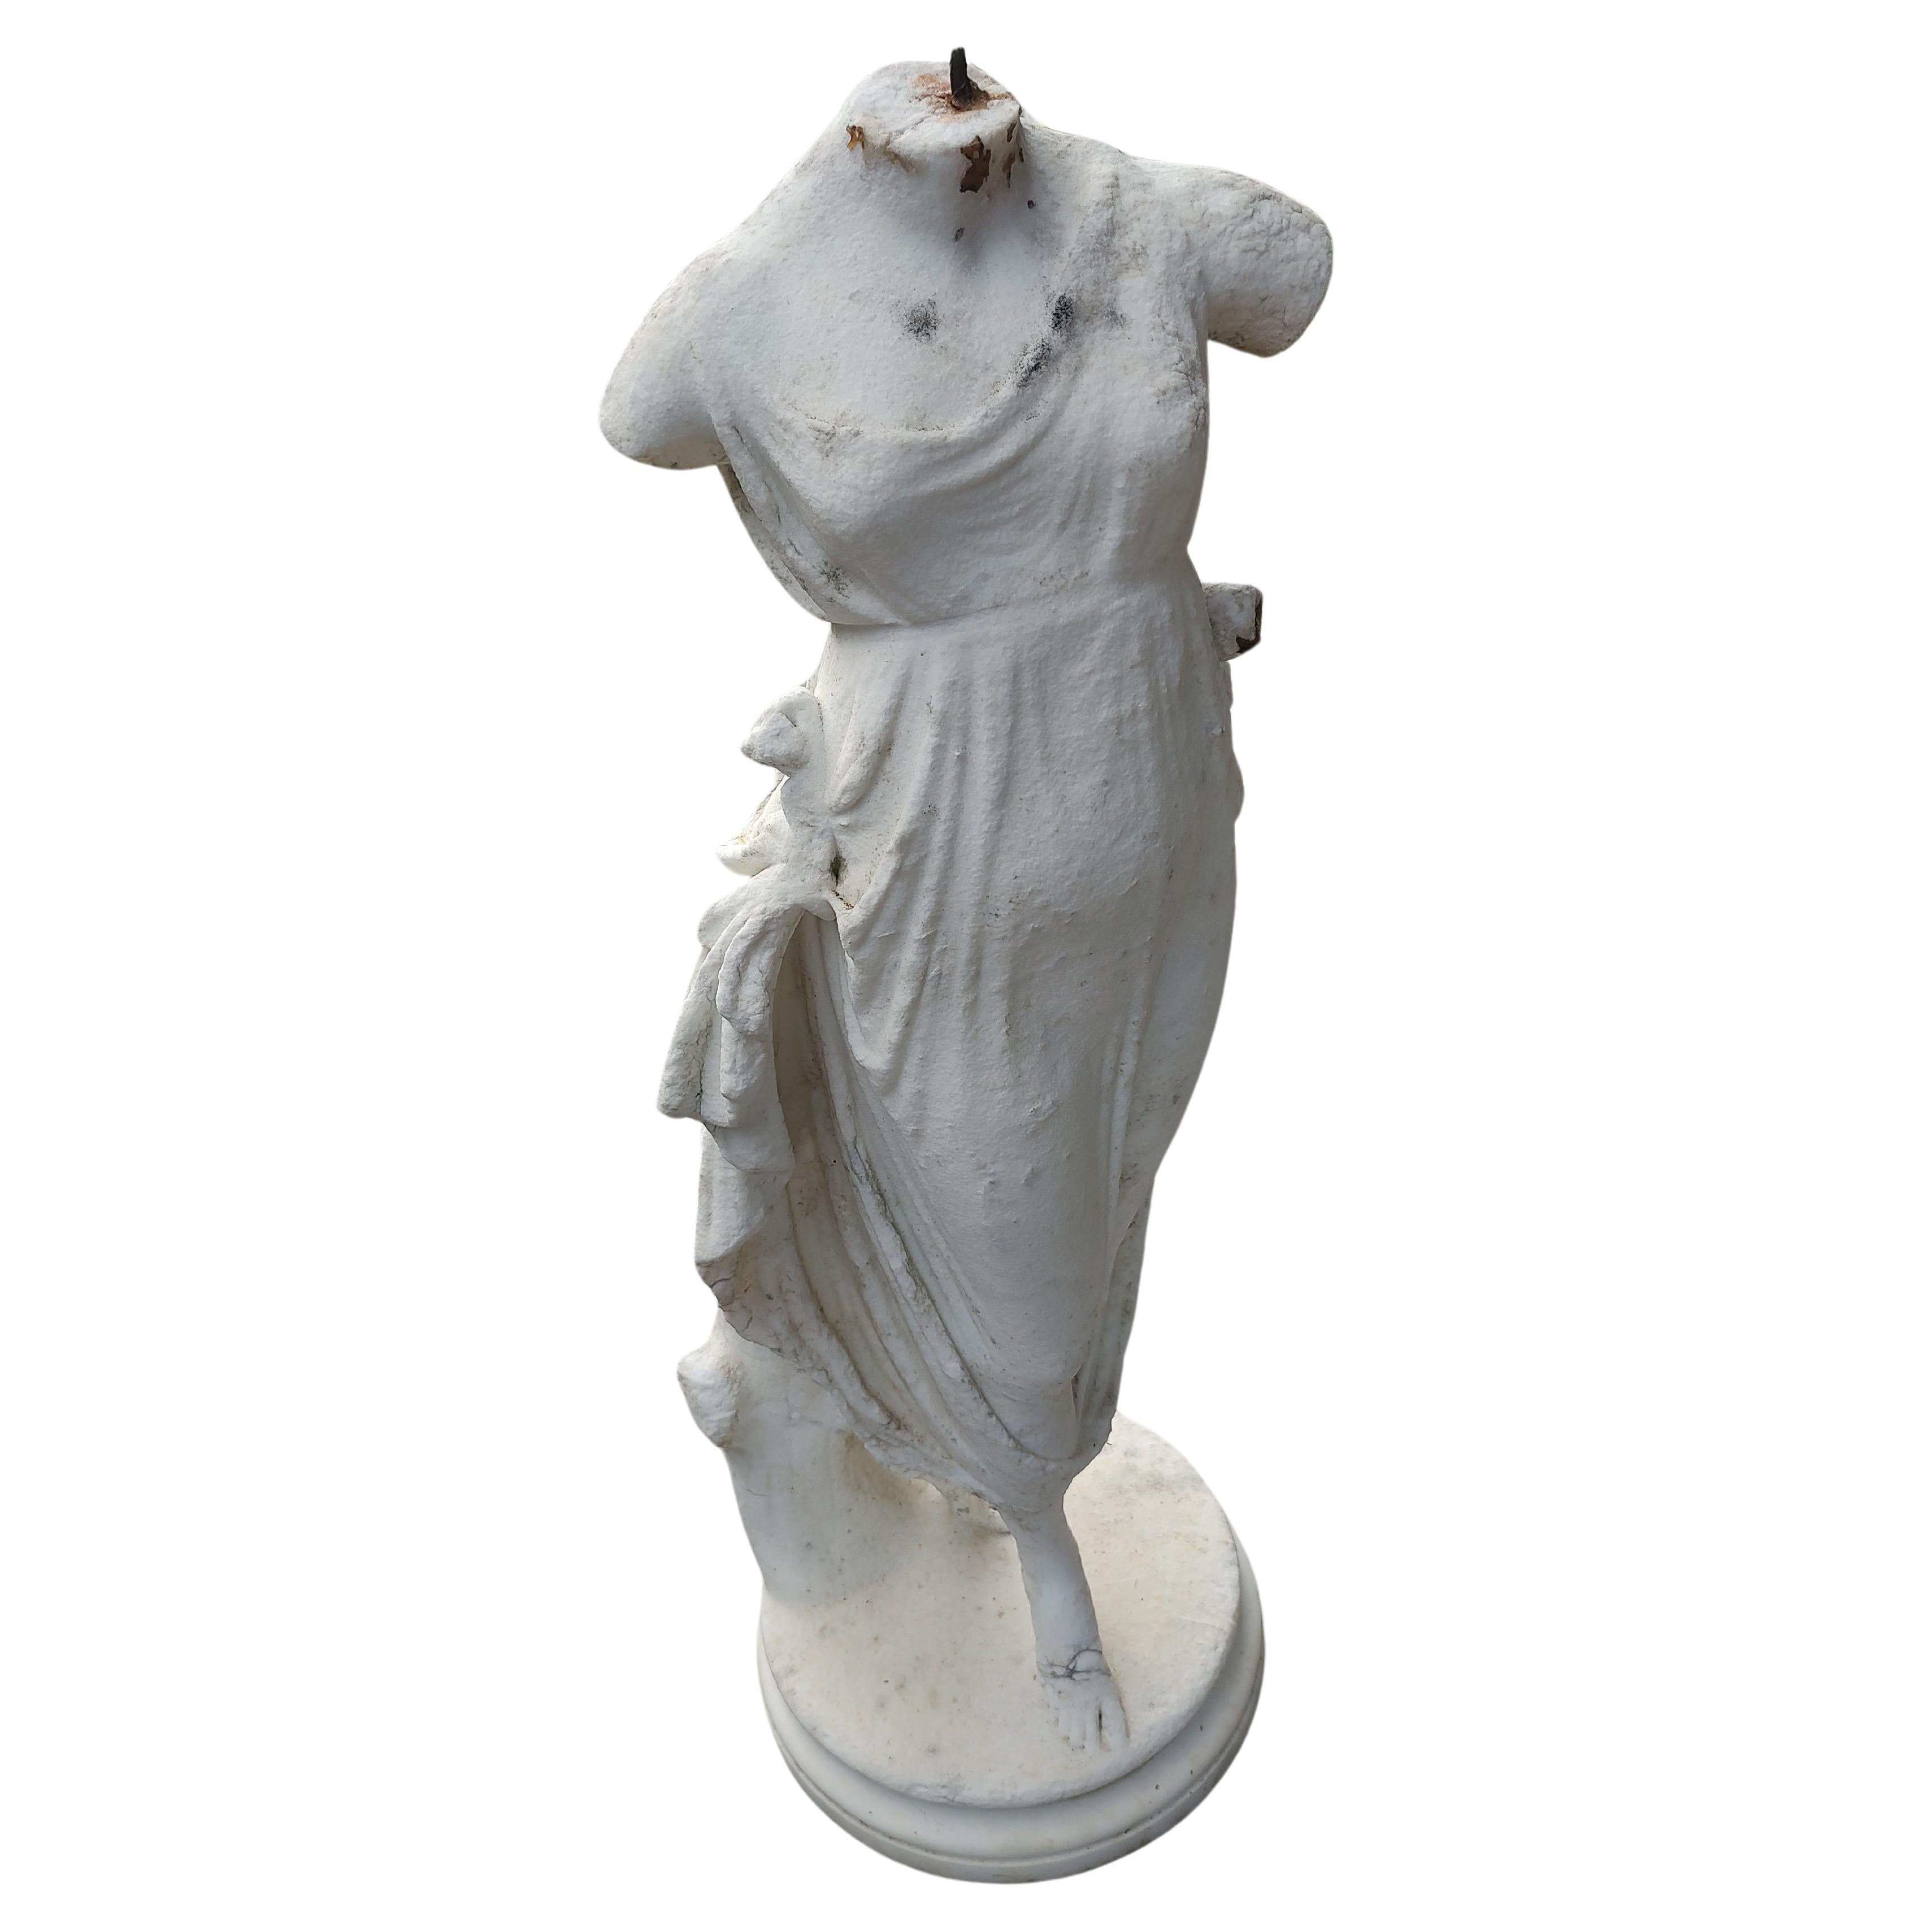 Fabelhaft bekleideter Torso einer holden Maid aus der viktorianischen Zeit
 Zweiteilig, hat einen Sockel, der von der Figur getrennt ist. Gut getragen, da es sein Leben in einem Garten verbracht hat. Strukturell gesund.